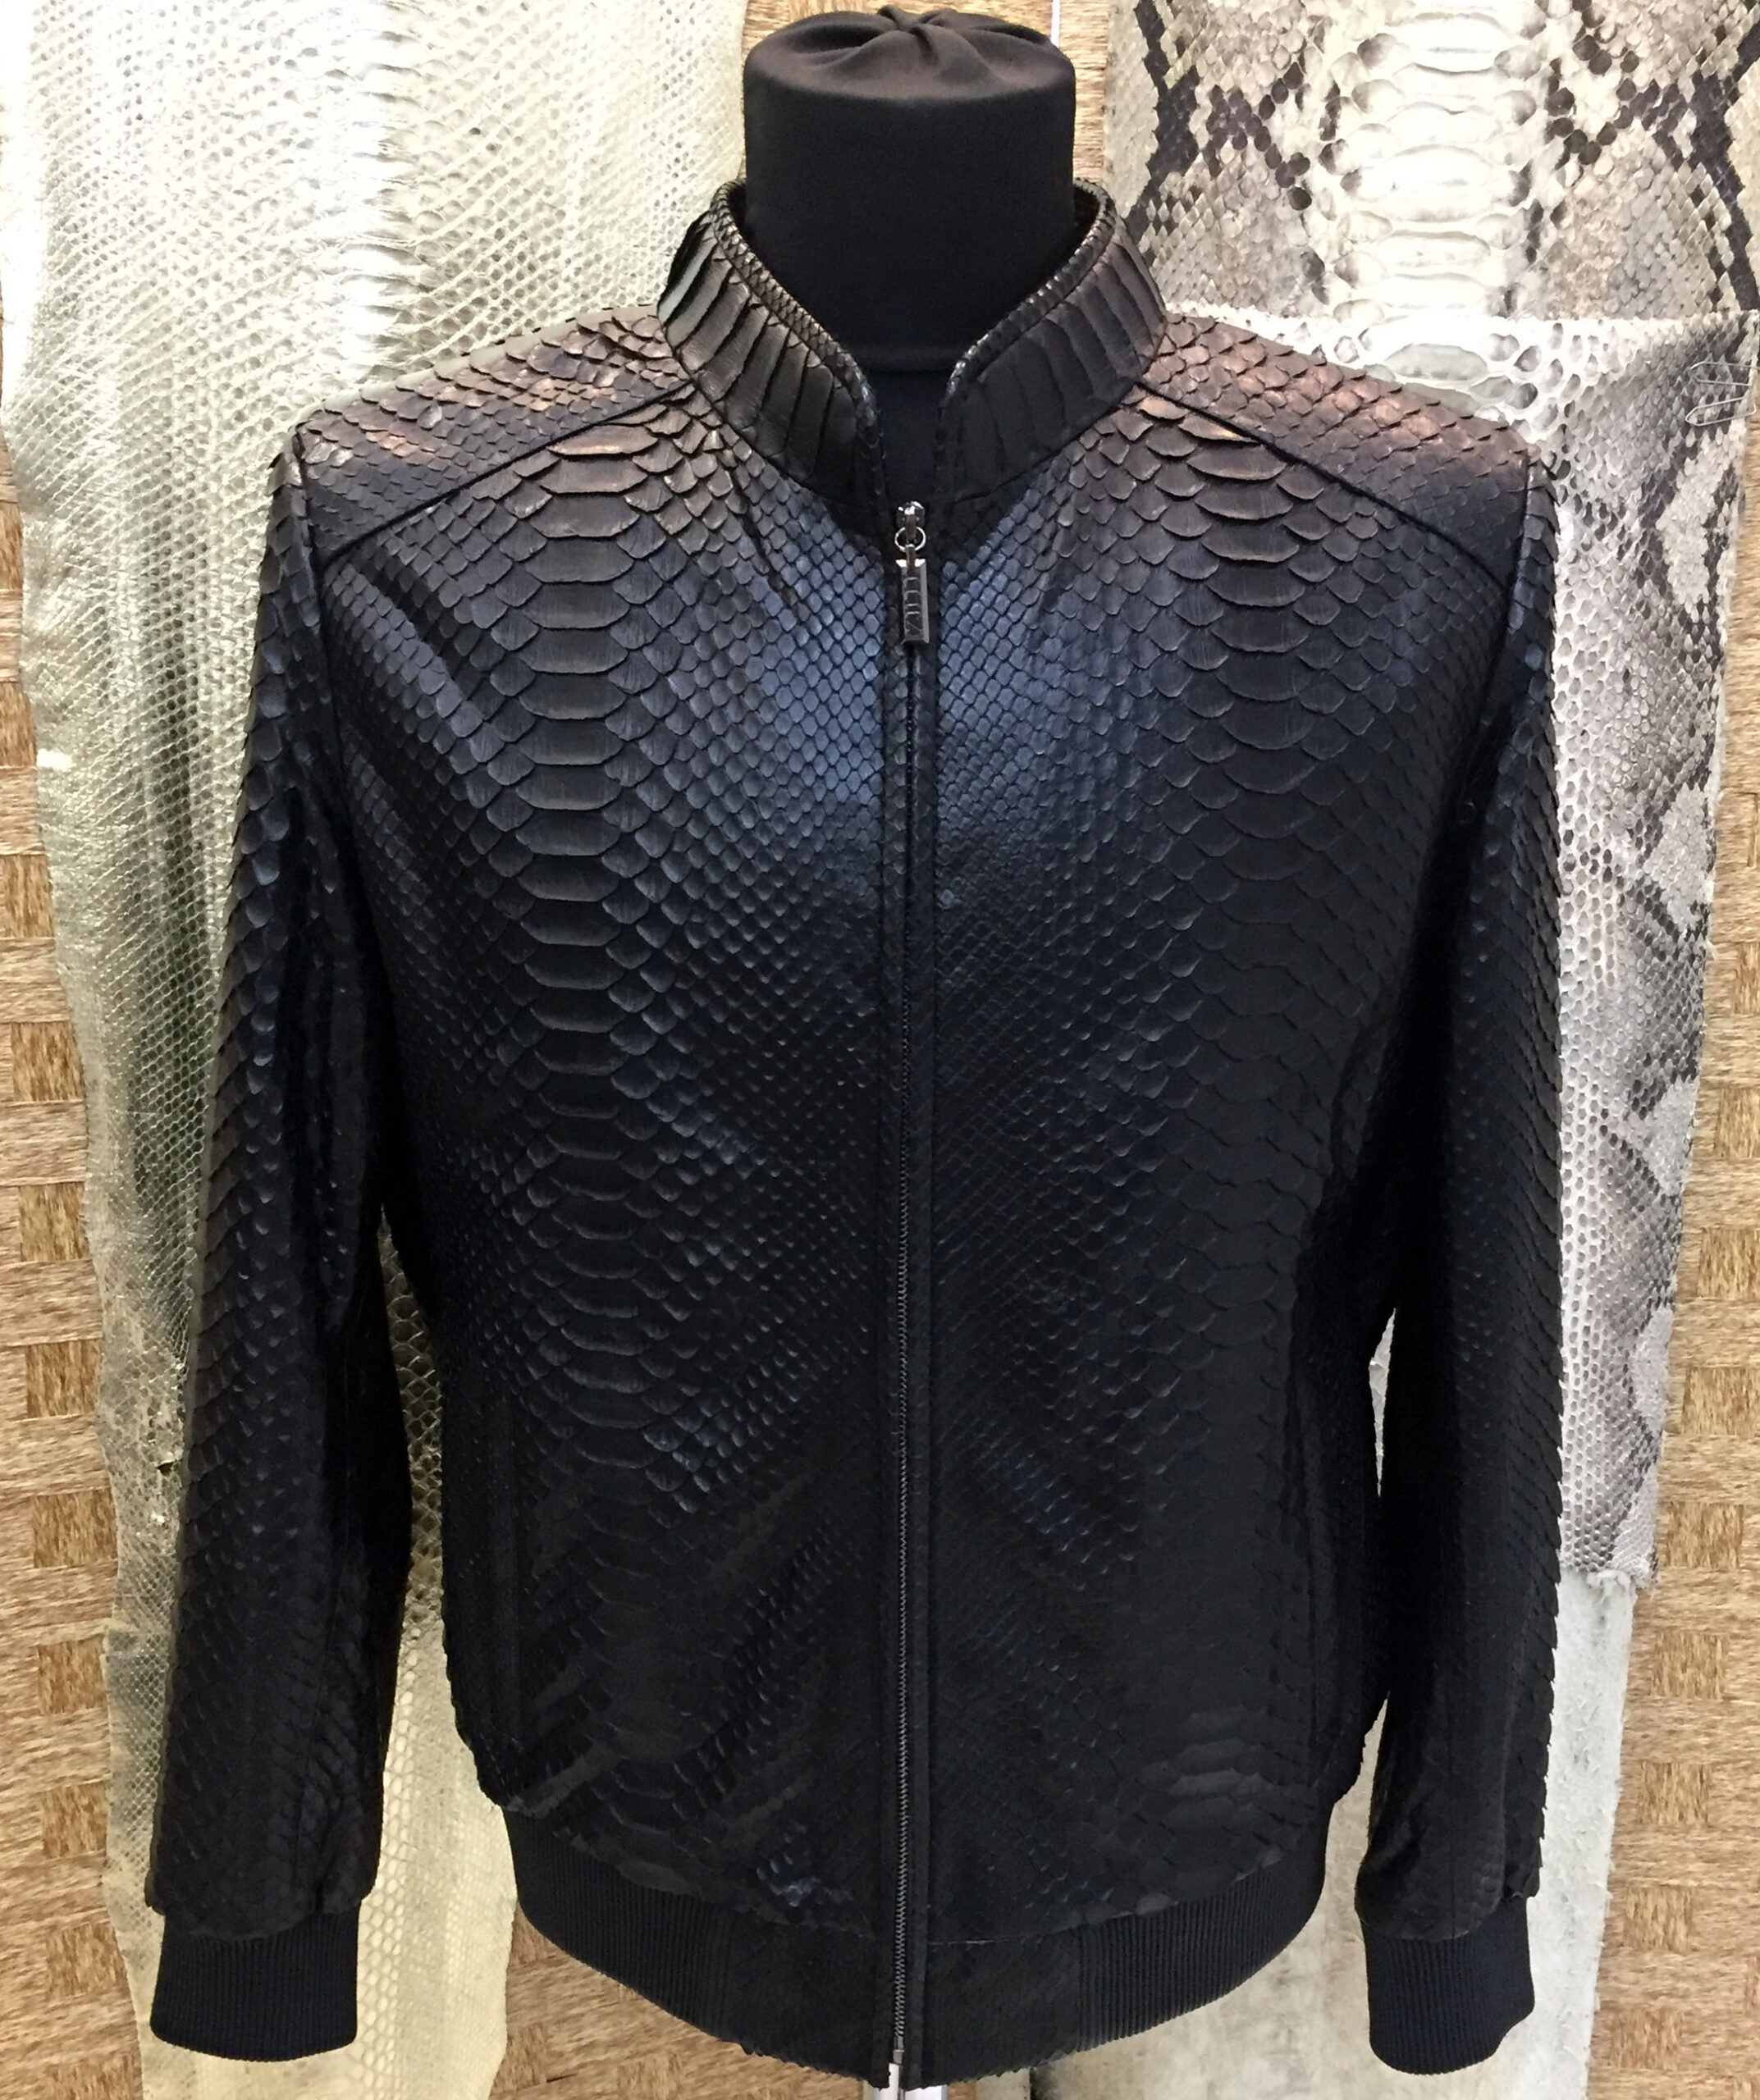 Zilli Python Leather Jacket - Leather Guys: Luxury Leather jackets